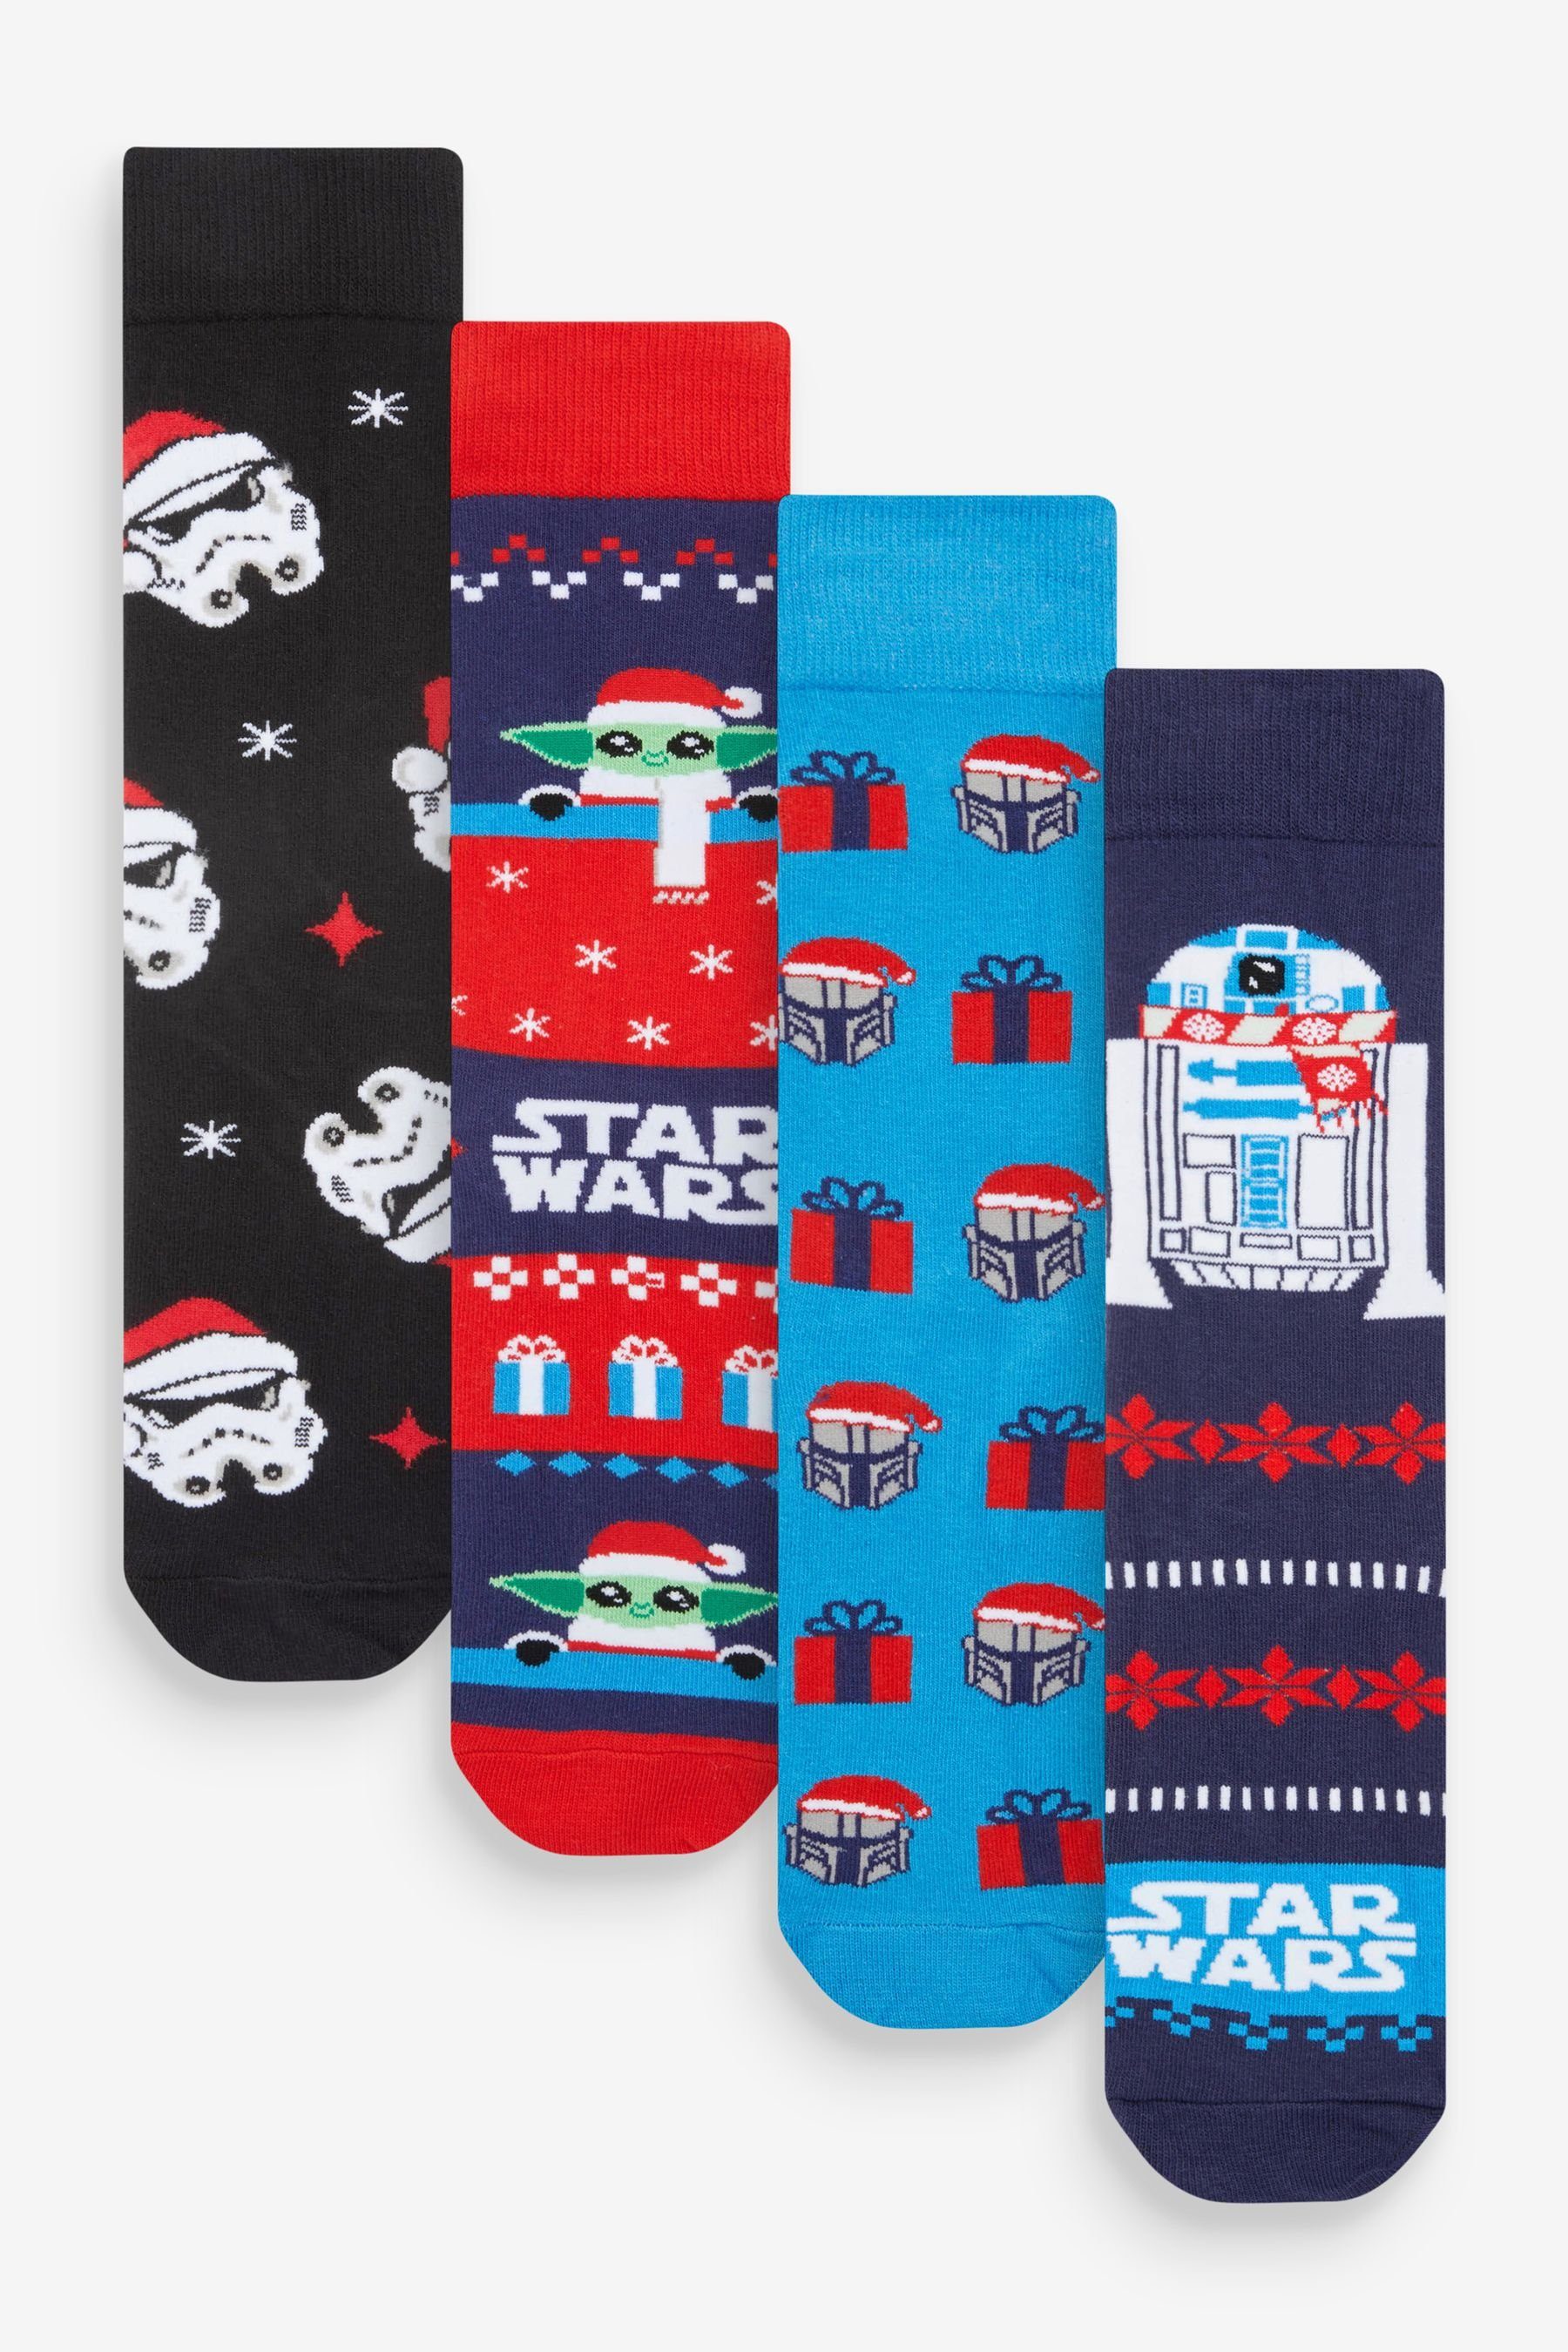 Next Kurzsocken Lizenzierte Socken, 4er-Pack (4-Paar) Star Wars Pattern | Kurzsocken